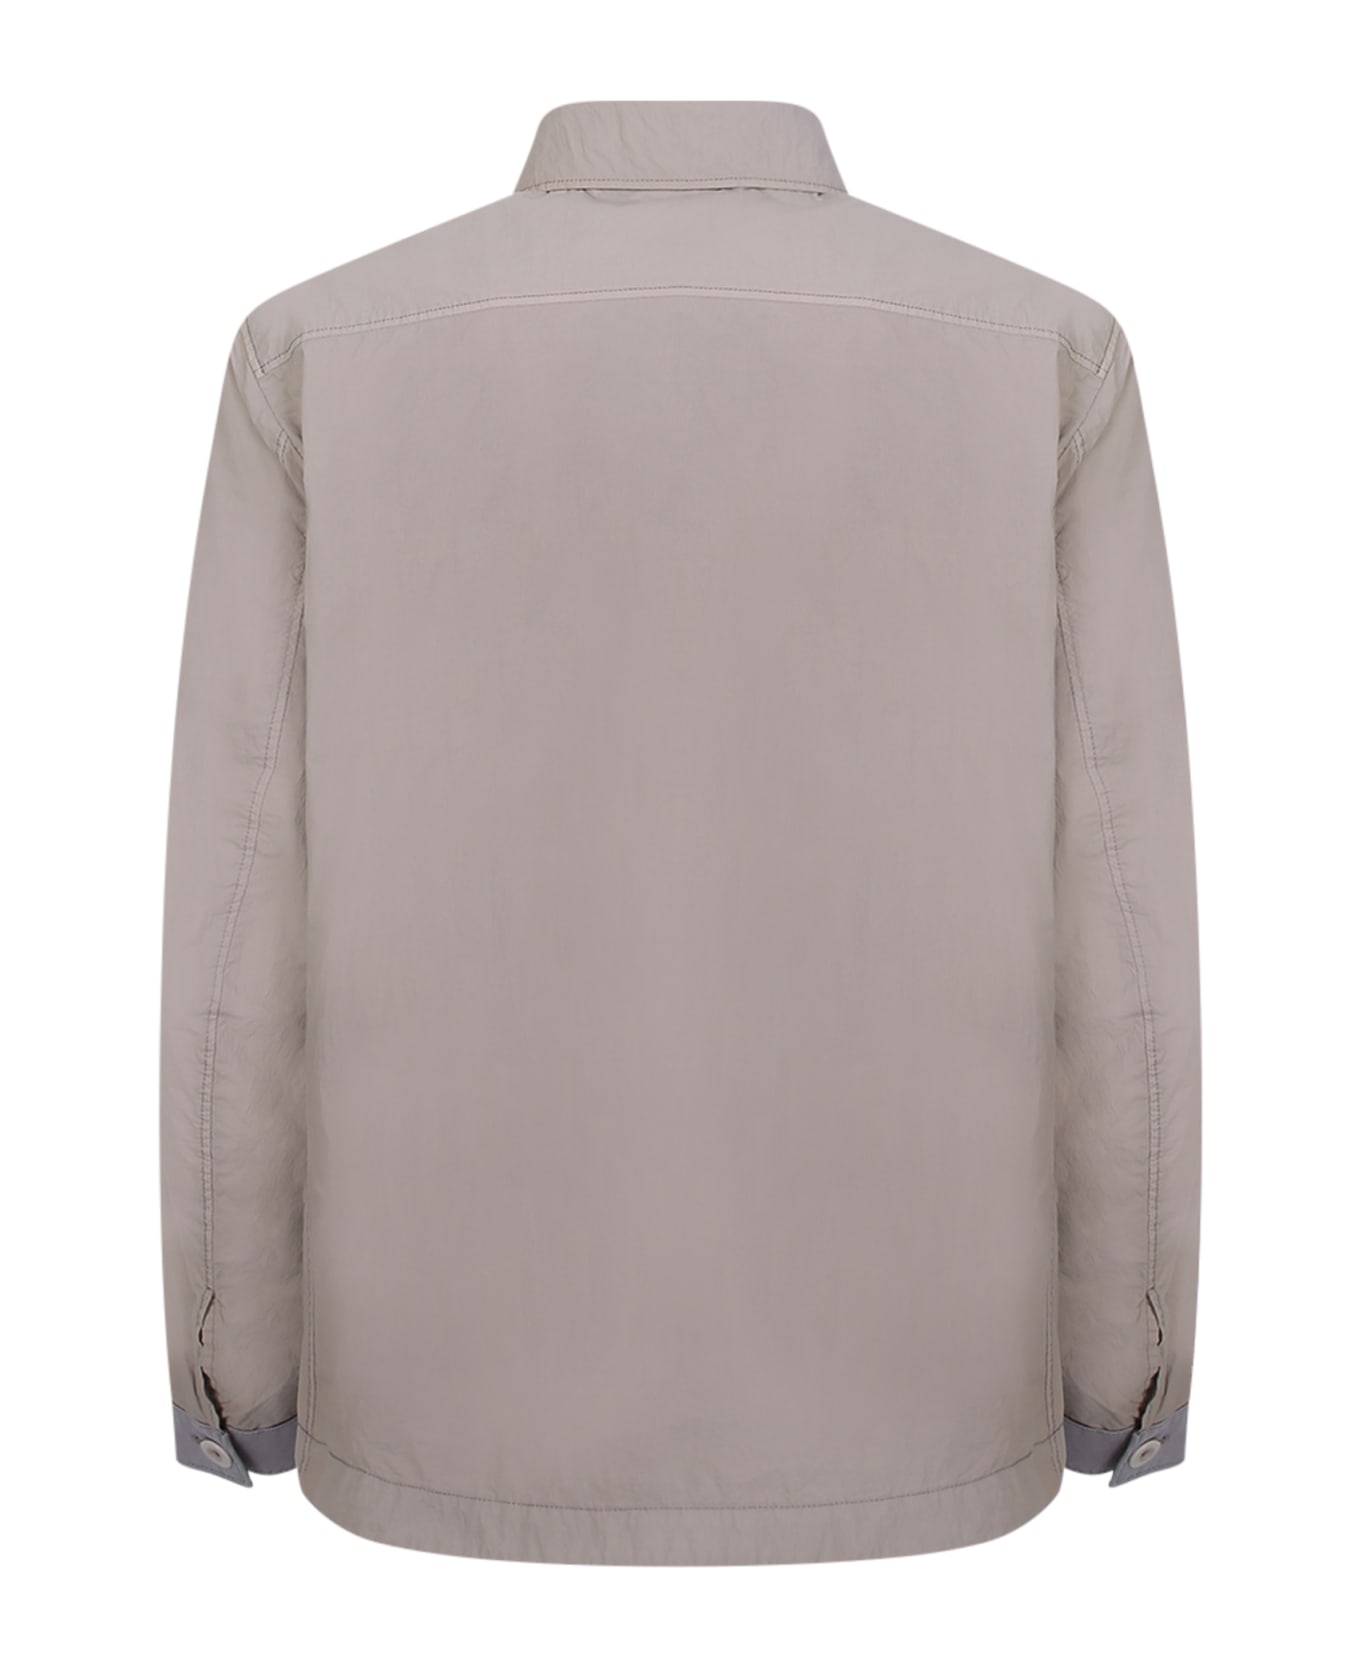 Ten C Zip-un Grey Shirt Jacket - Grey ジャケット